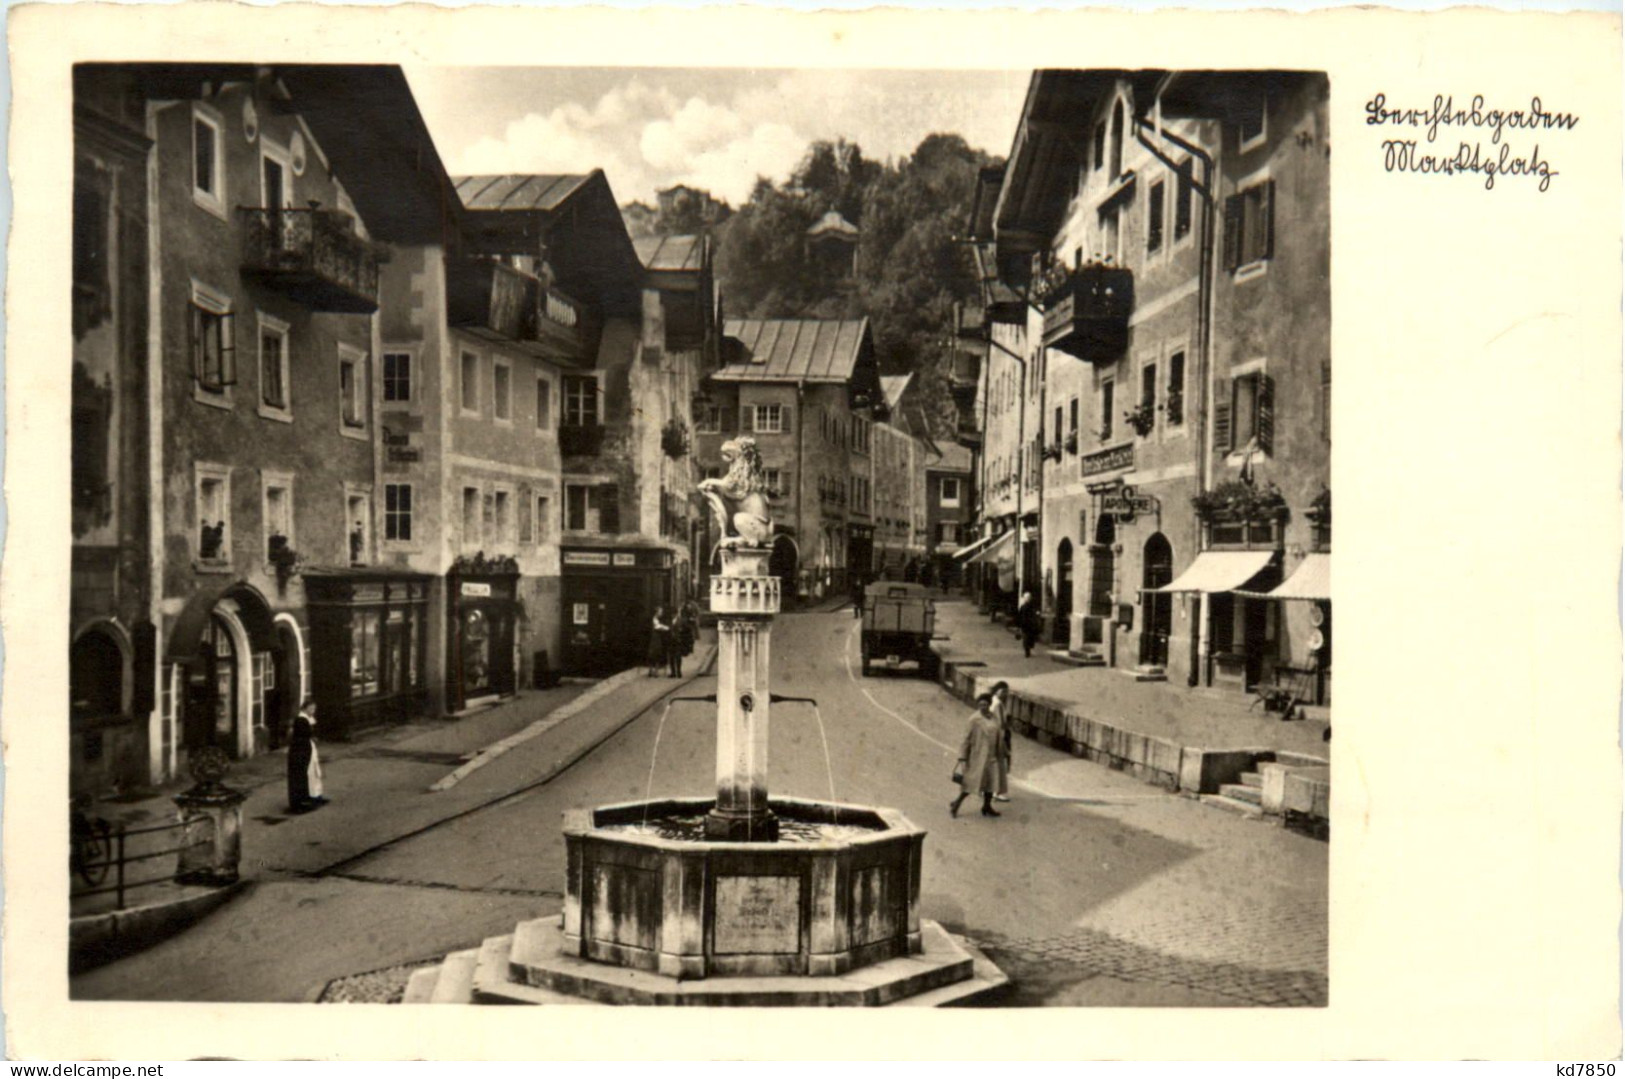 Berchtesgaden - Marktplatz - Berchtesgaden